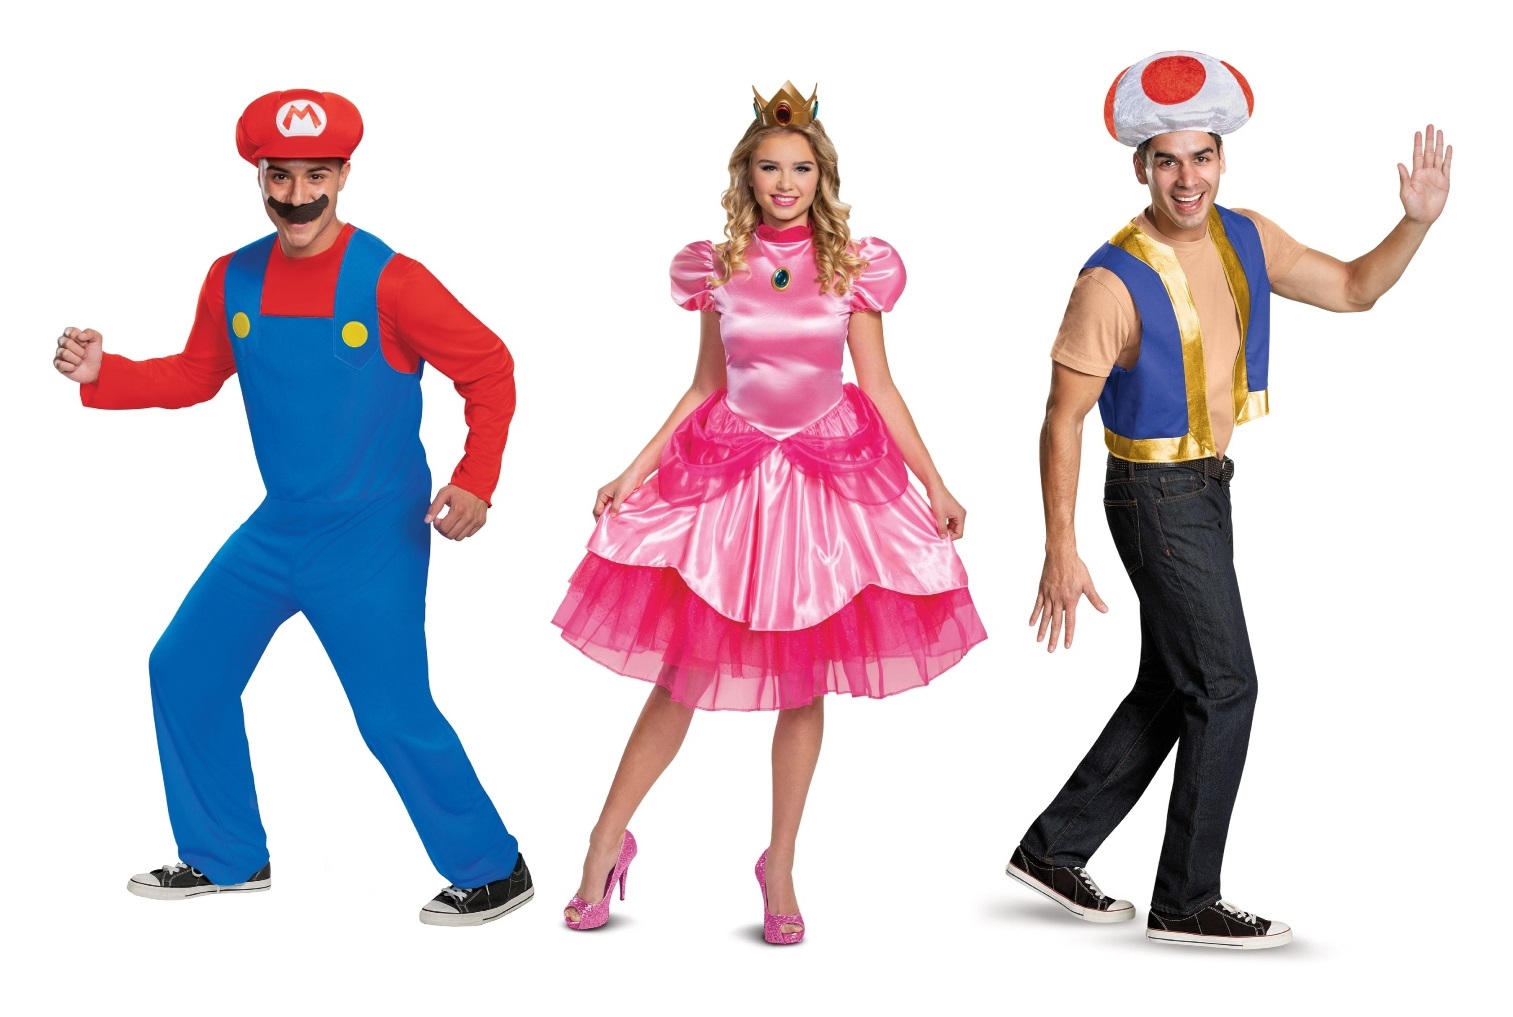 Group Super Mario Bros. Costumes